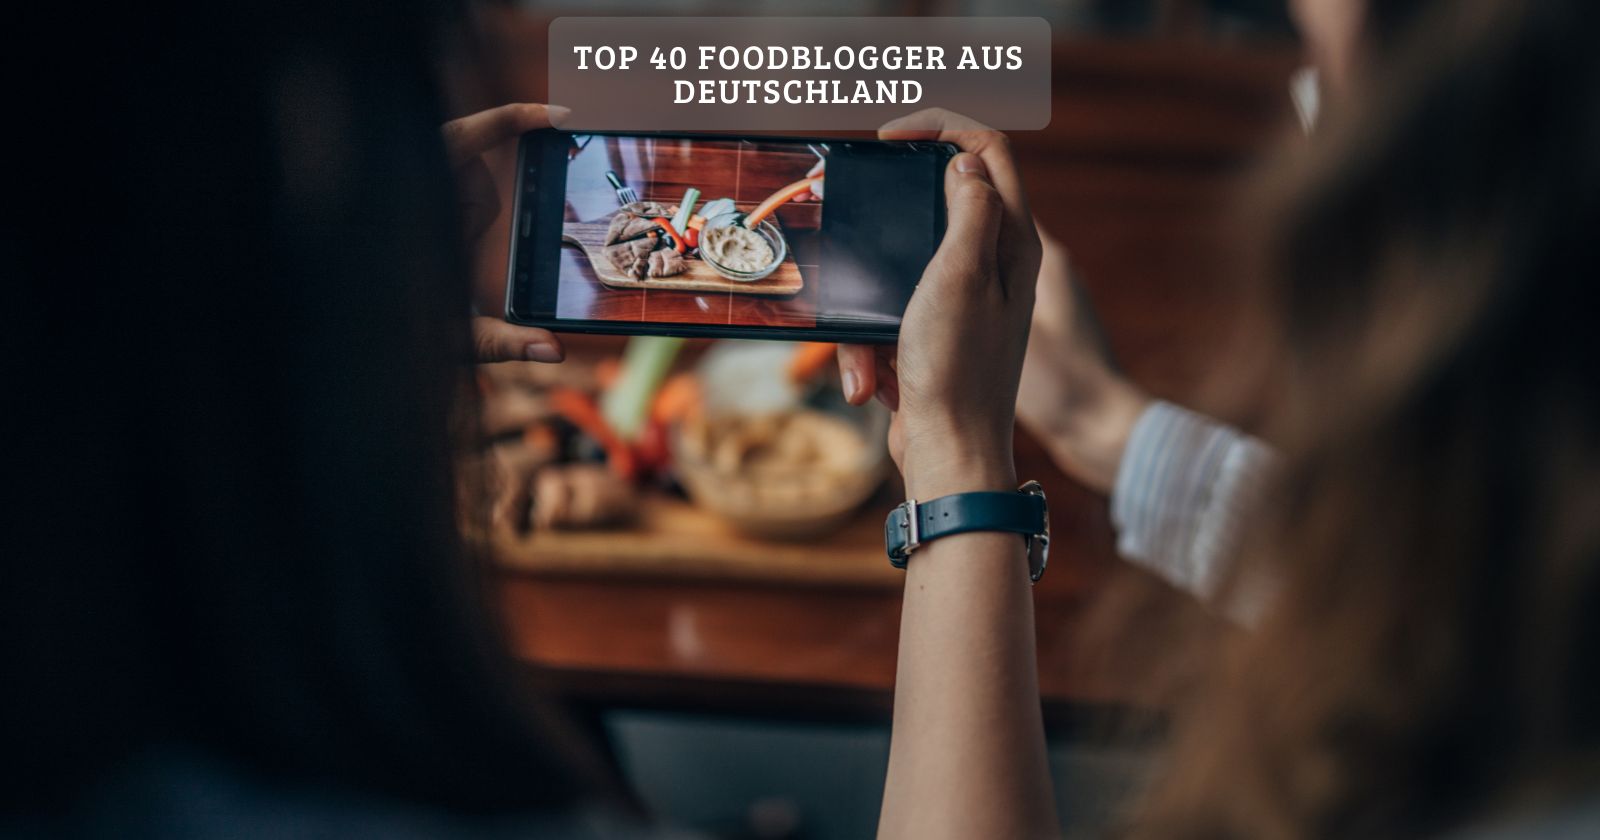 Top 40 foodblogger aus deutschland